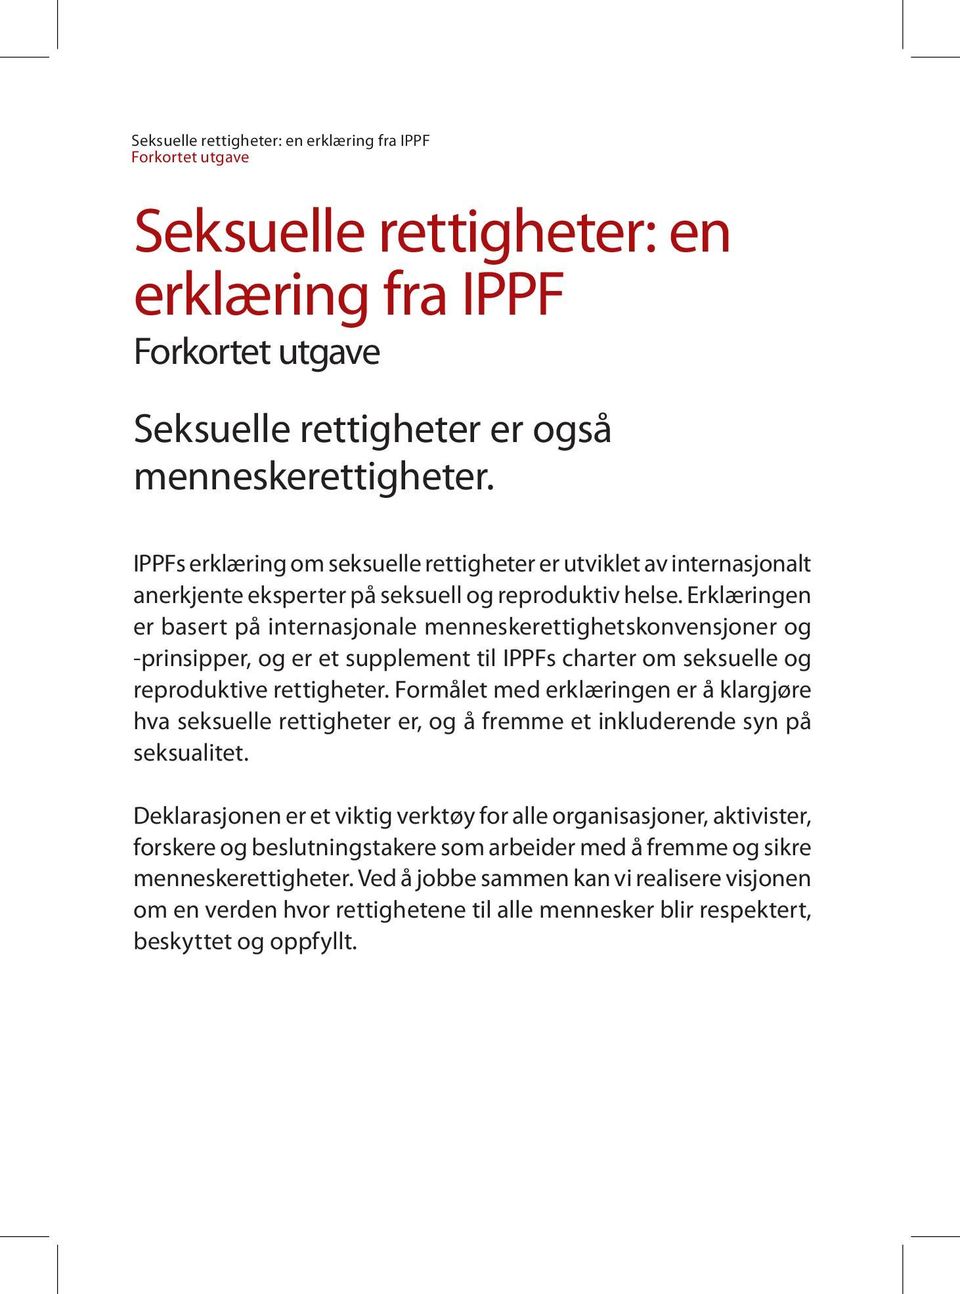 Erklæringen er basert på internasjonale menneskerettighetskonvensjoner og -prinsipper, og er et supplement til IPPFs charter om seksuelle og reproduktive rettigheter.